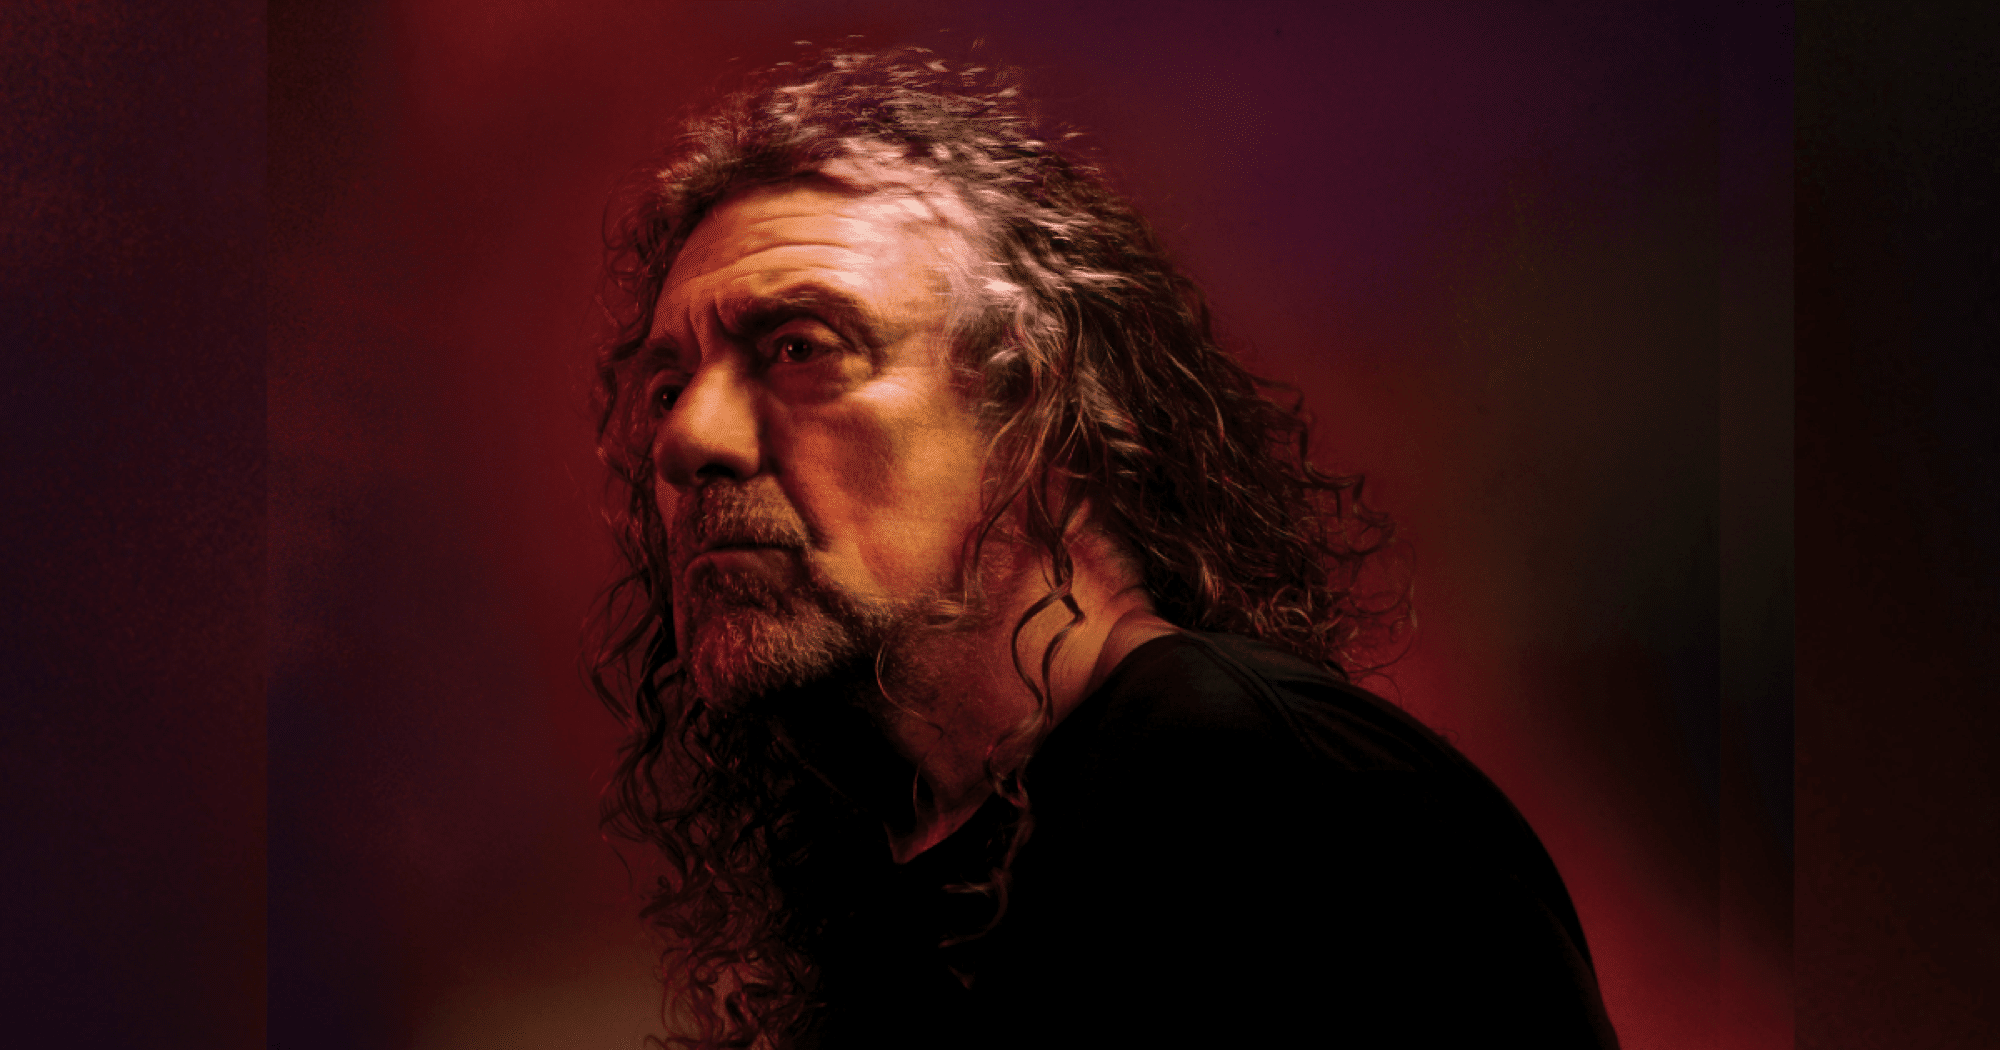 Вс плант. Солист лед Зеппелин. Robert Plant. Carry Fire.